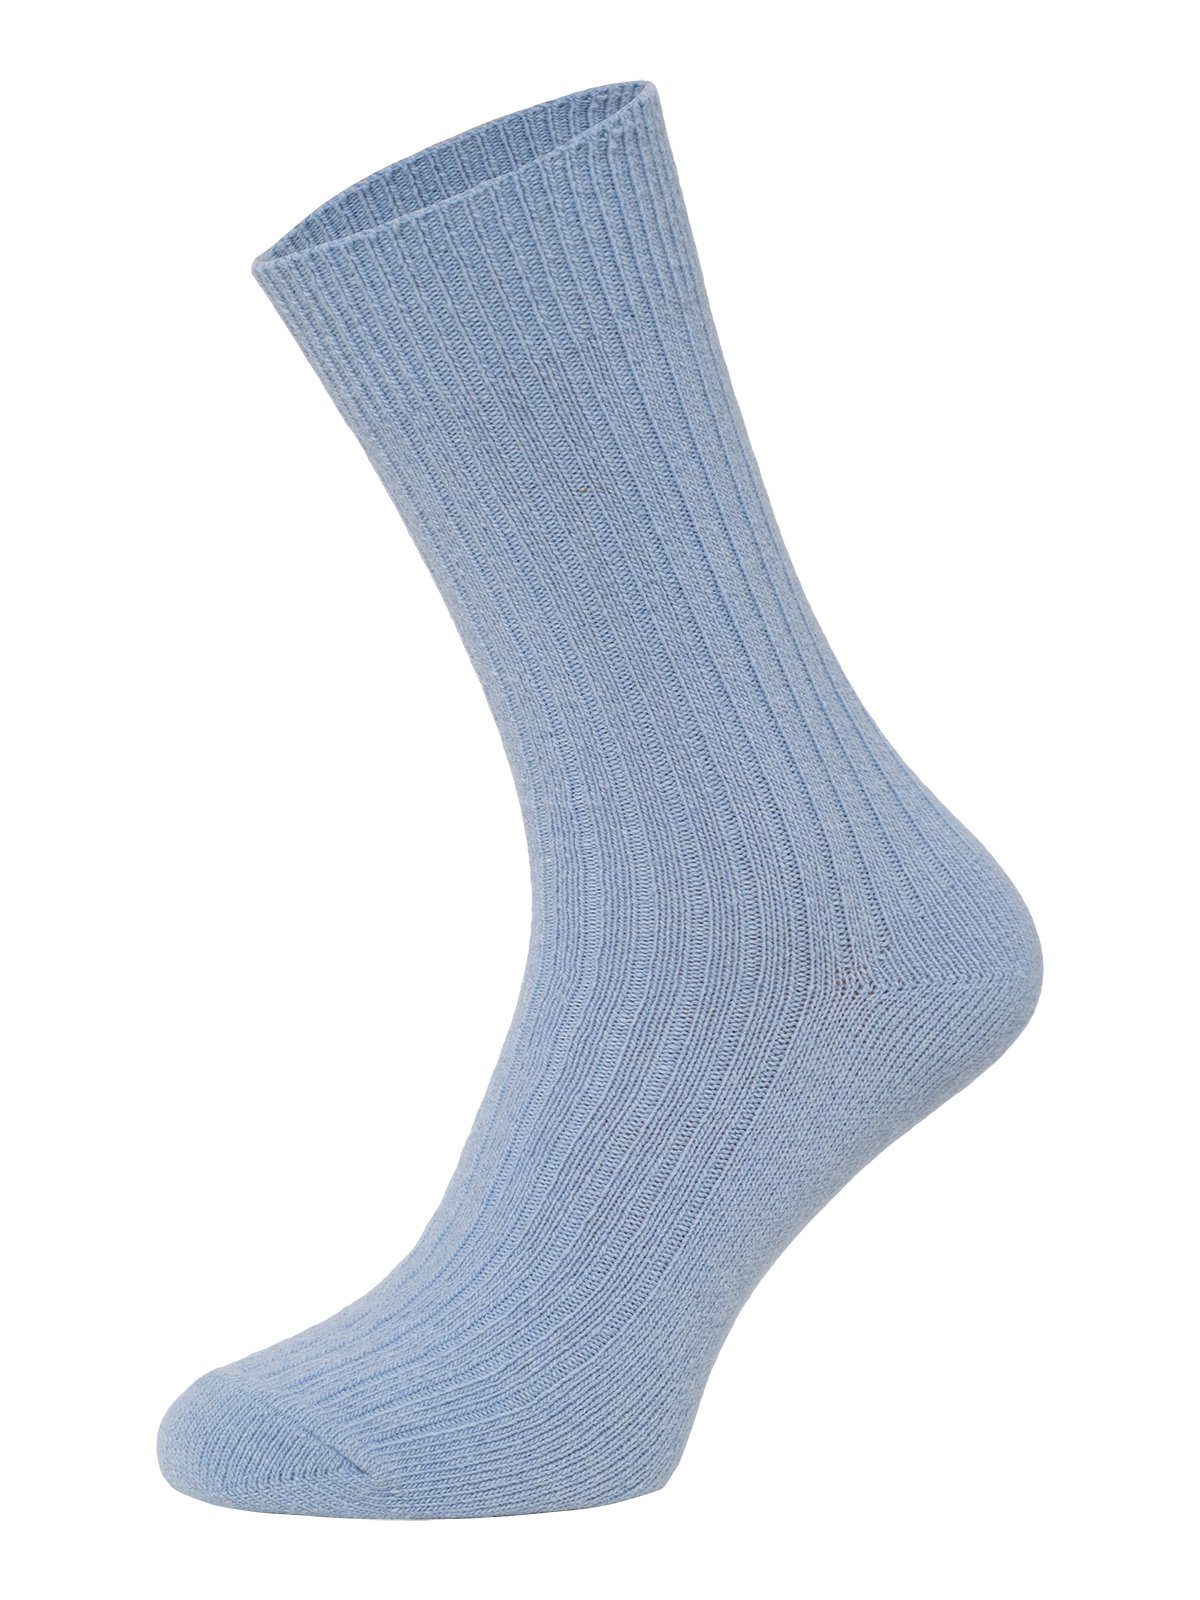 HomeOfSocks Socken Dünne Bunte Bunt Wollsocken Hochwertige Wollsocken Dünn Hellblau Druckarm Wollanteil Uni mit 72